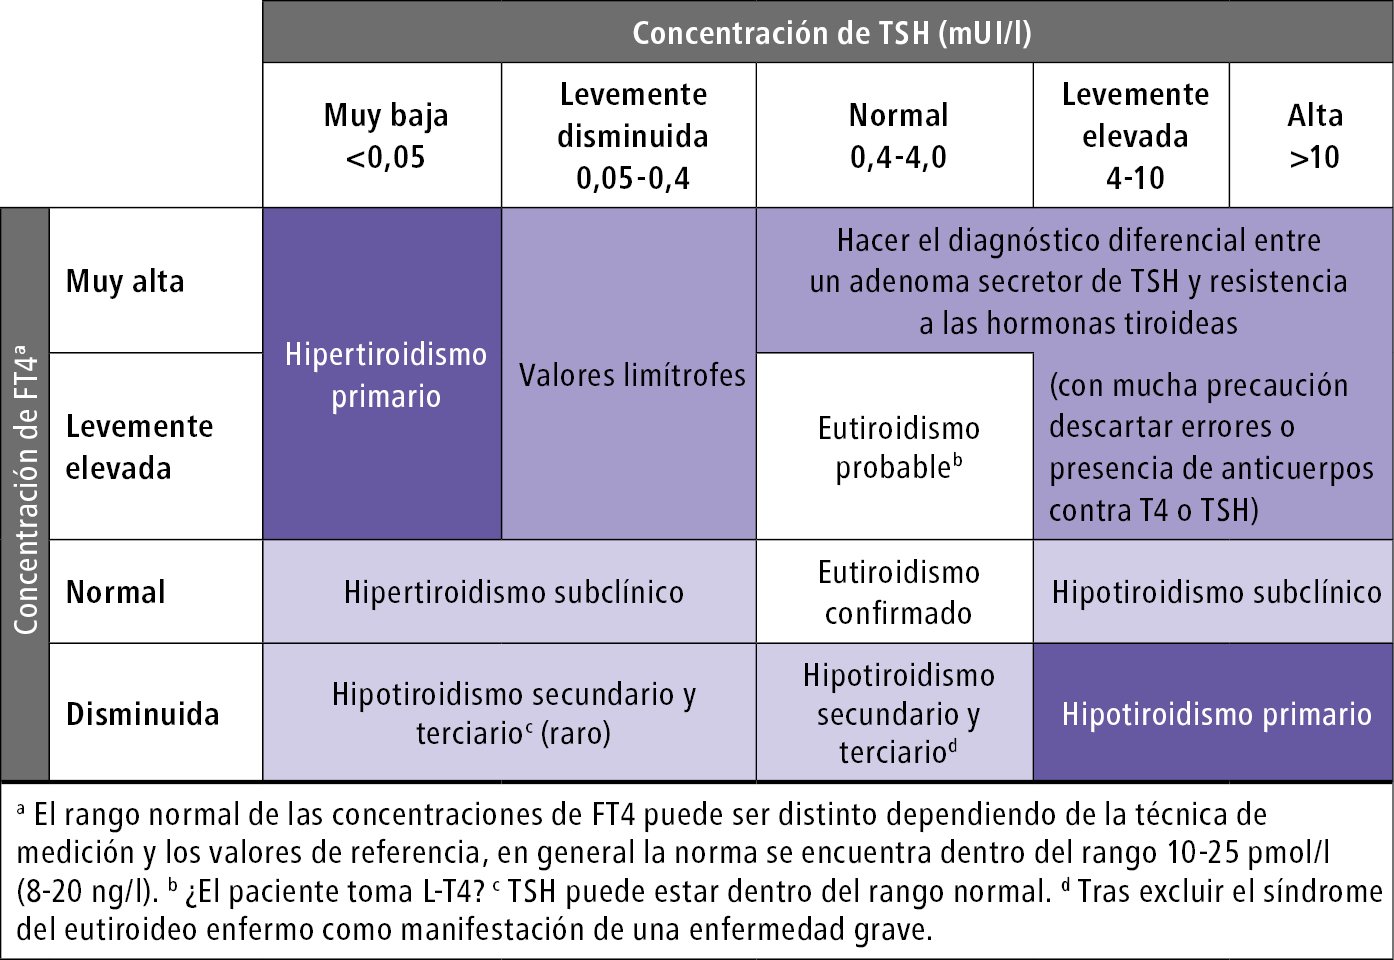    Fig. 9.2-2.  Diagnóstico diferencial de los trastornos de la función tiroidea basado en los niveles séricos de TSH y FT4 